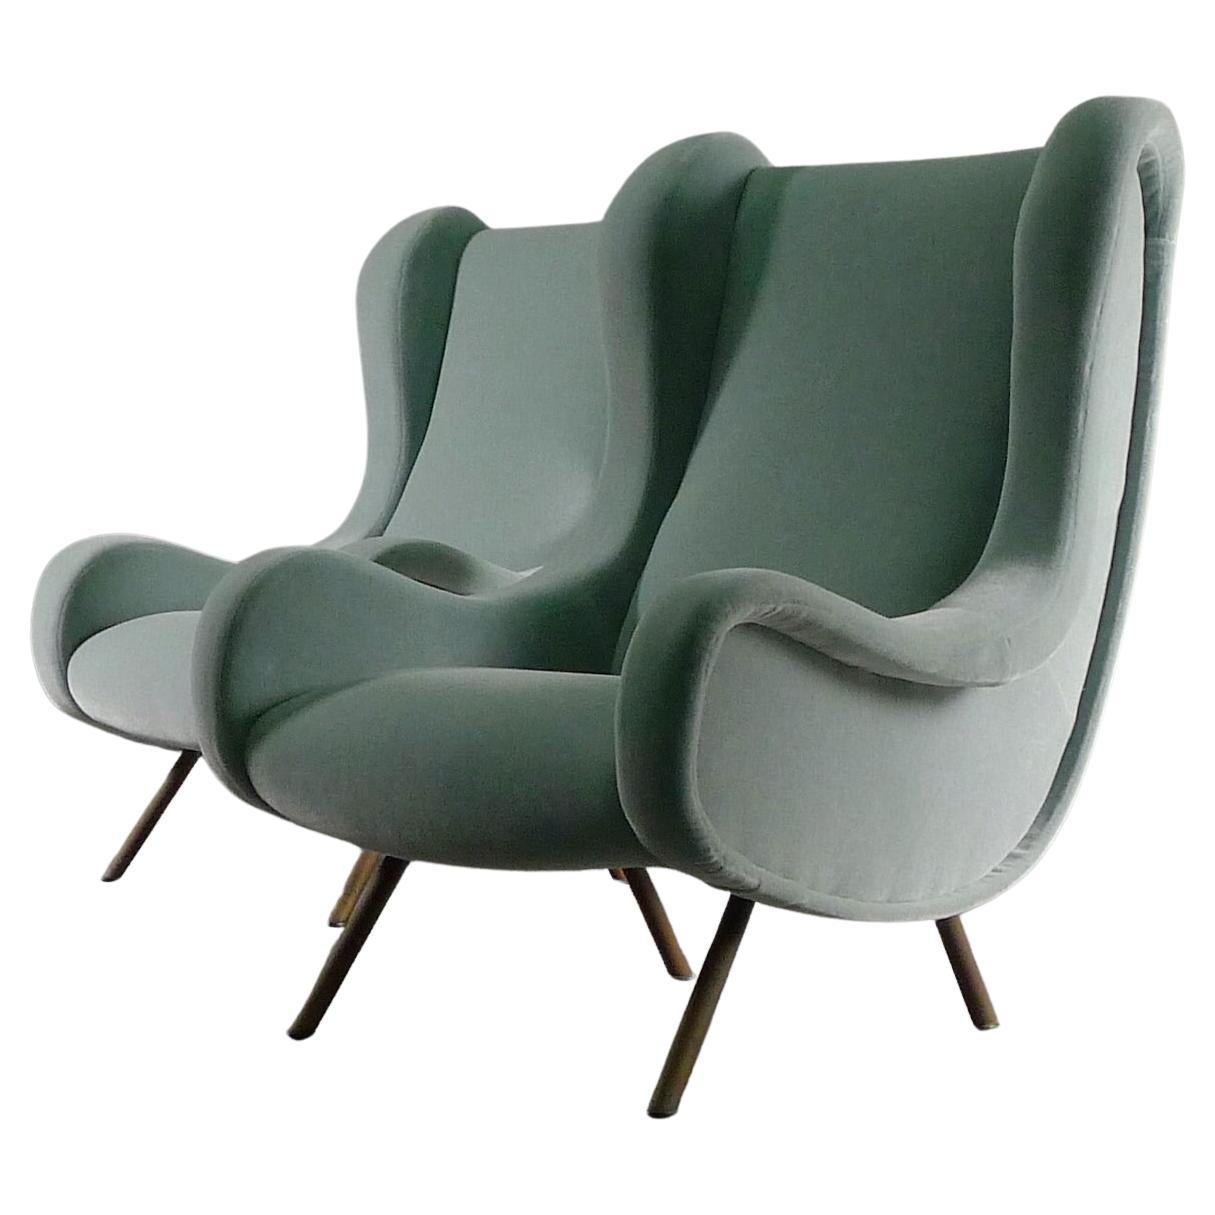 Marco Zanuso, Paar Seniorenstühle, ursprünglich 1951 entworfen, diese Exemplare stammen wahrscheinlich aus den späten 1950er/frühen 1960er Jahren und wurden von Arflex hergestellt.  Zusammen mit einem Paar passender Ottomane.

Die Stühle wurden mit